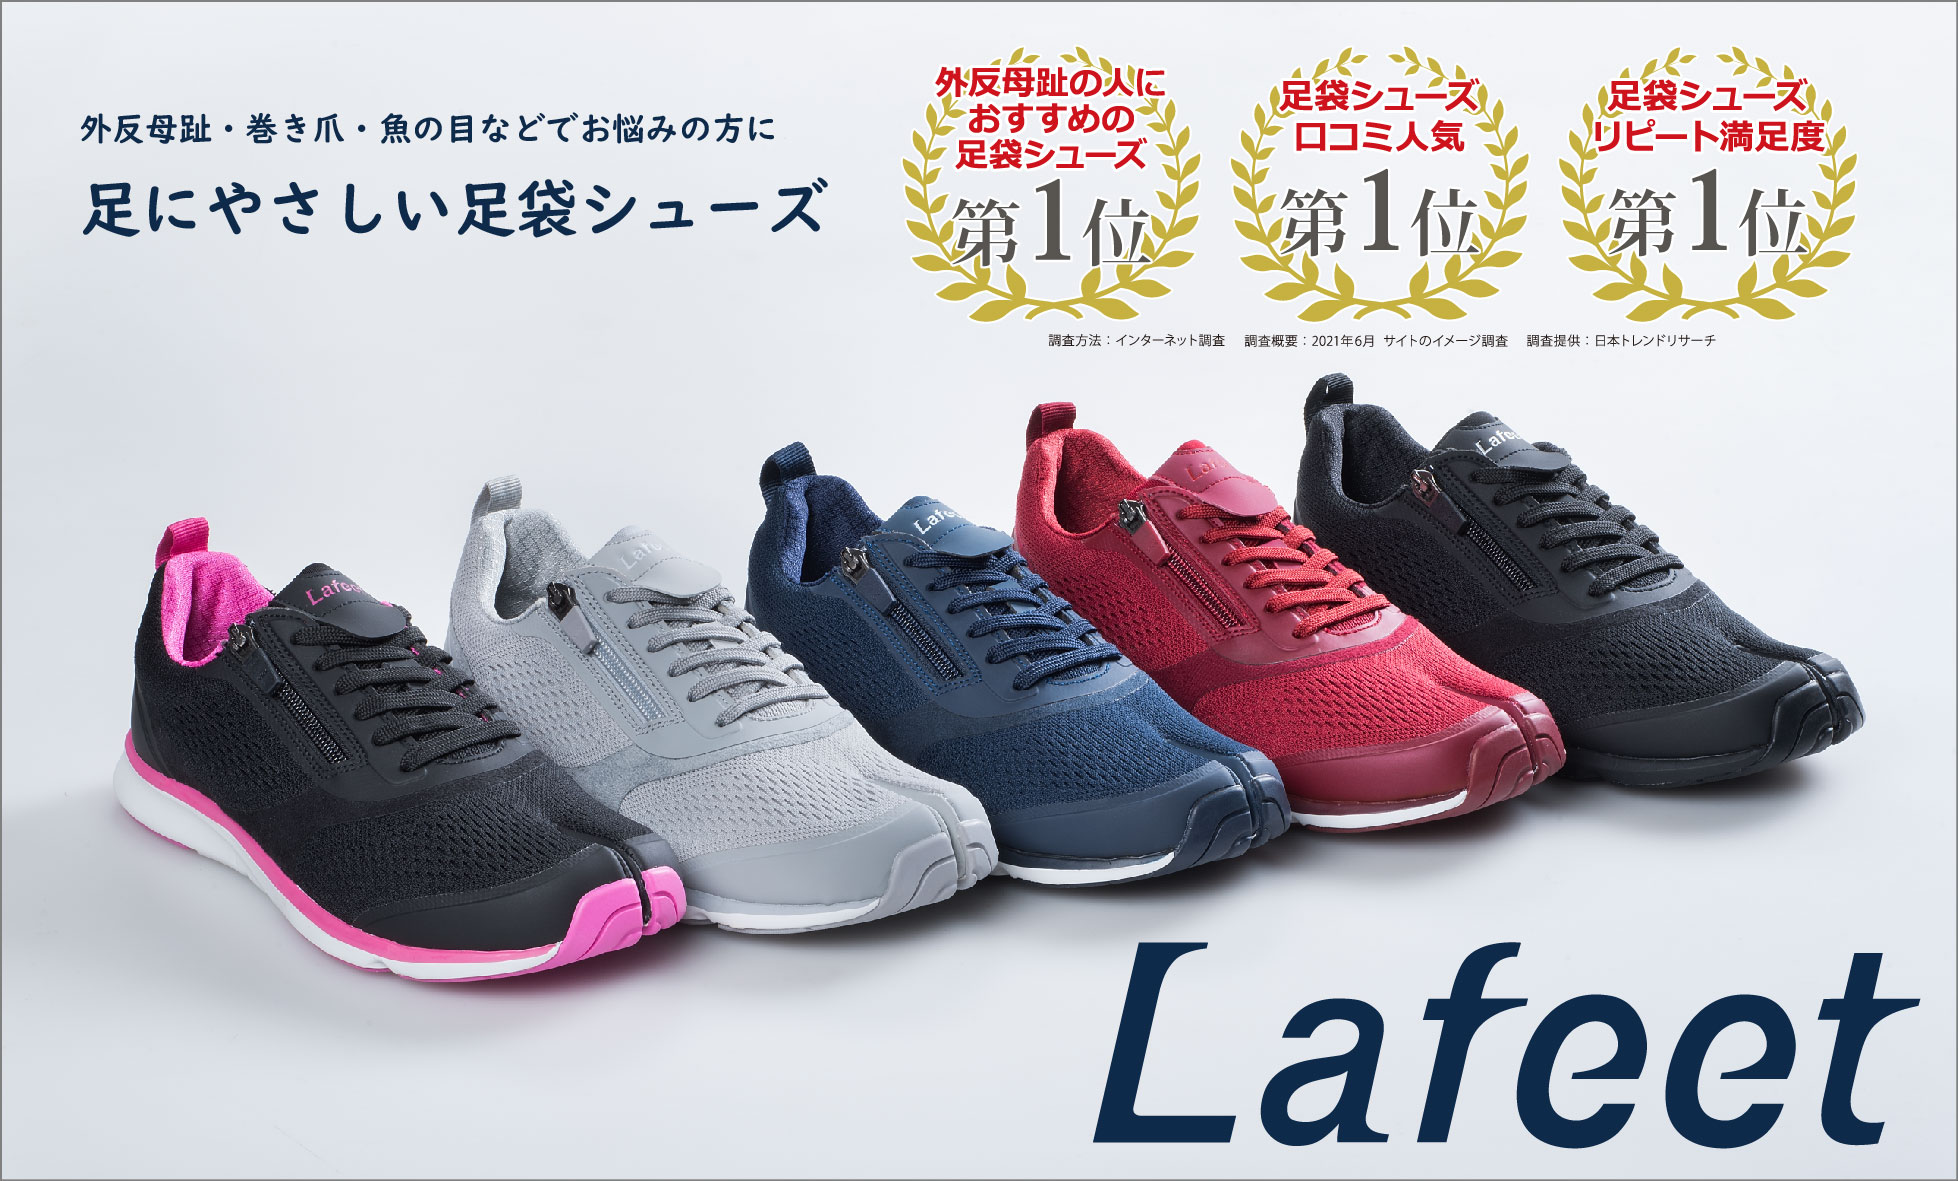 オリジナルLafeetオーダー会in中山靴店